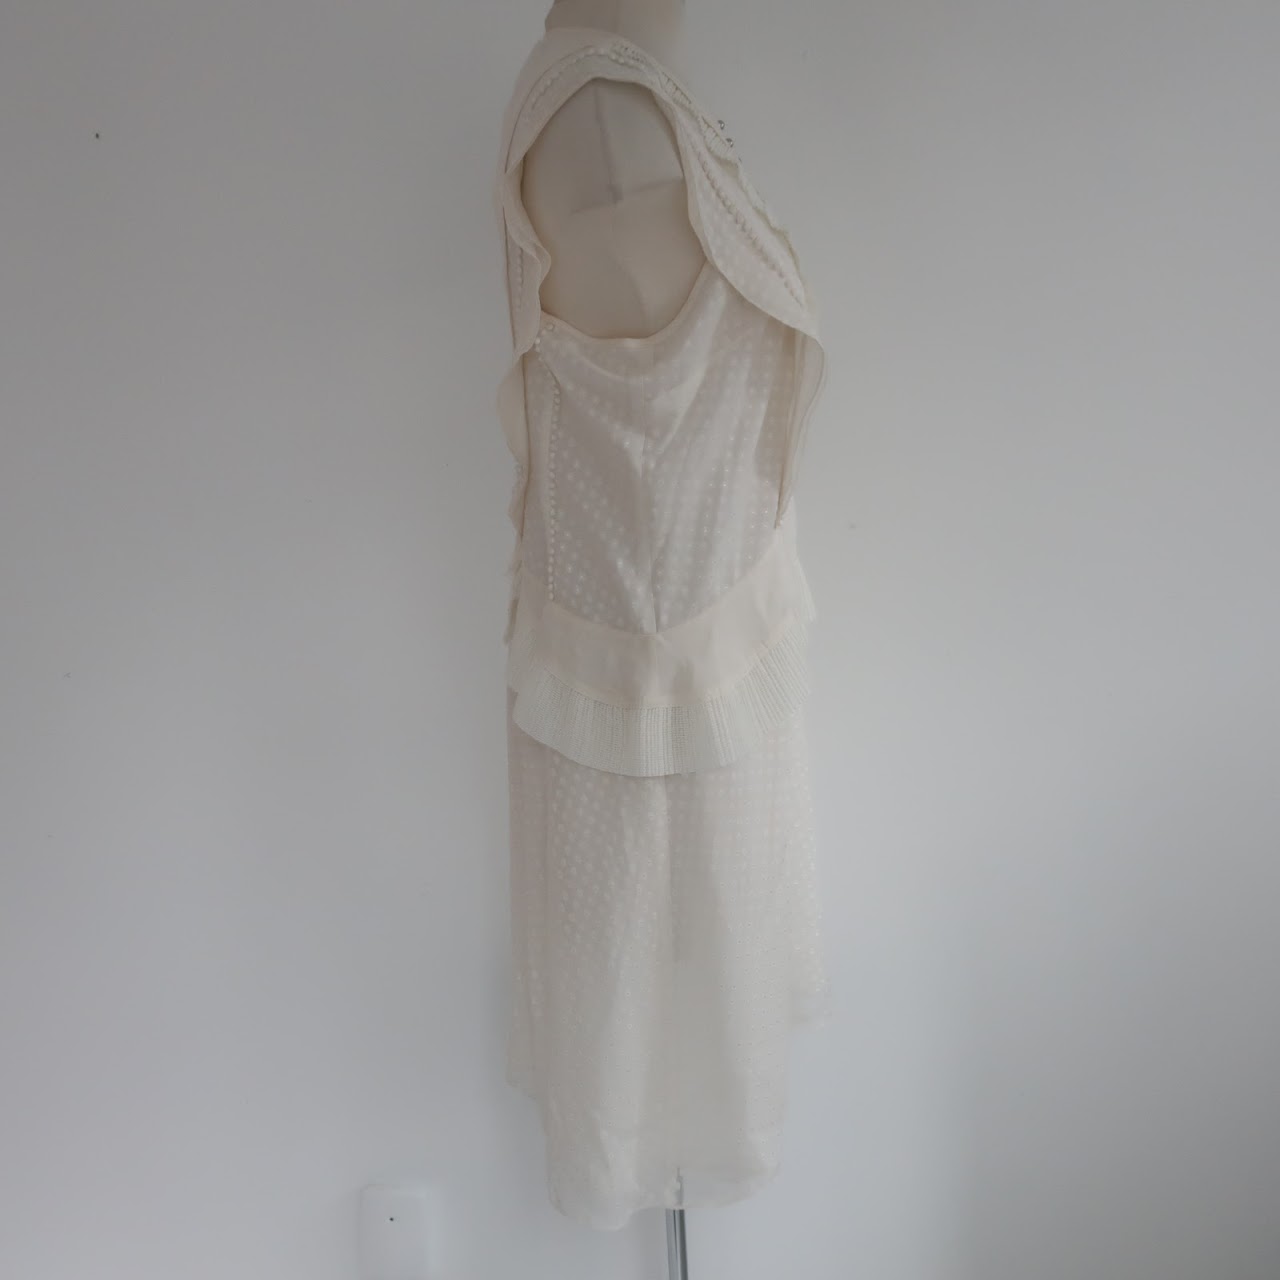 Proenza Schouler Sleeveless Ivory Dress